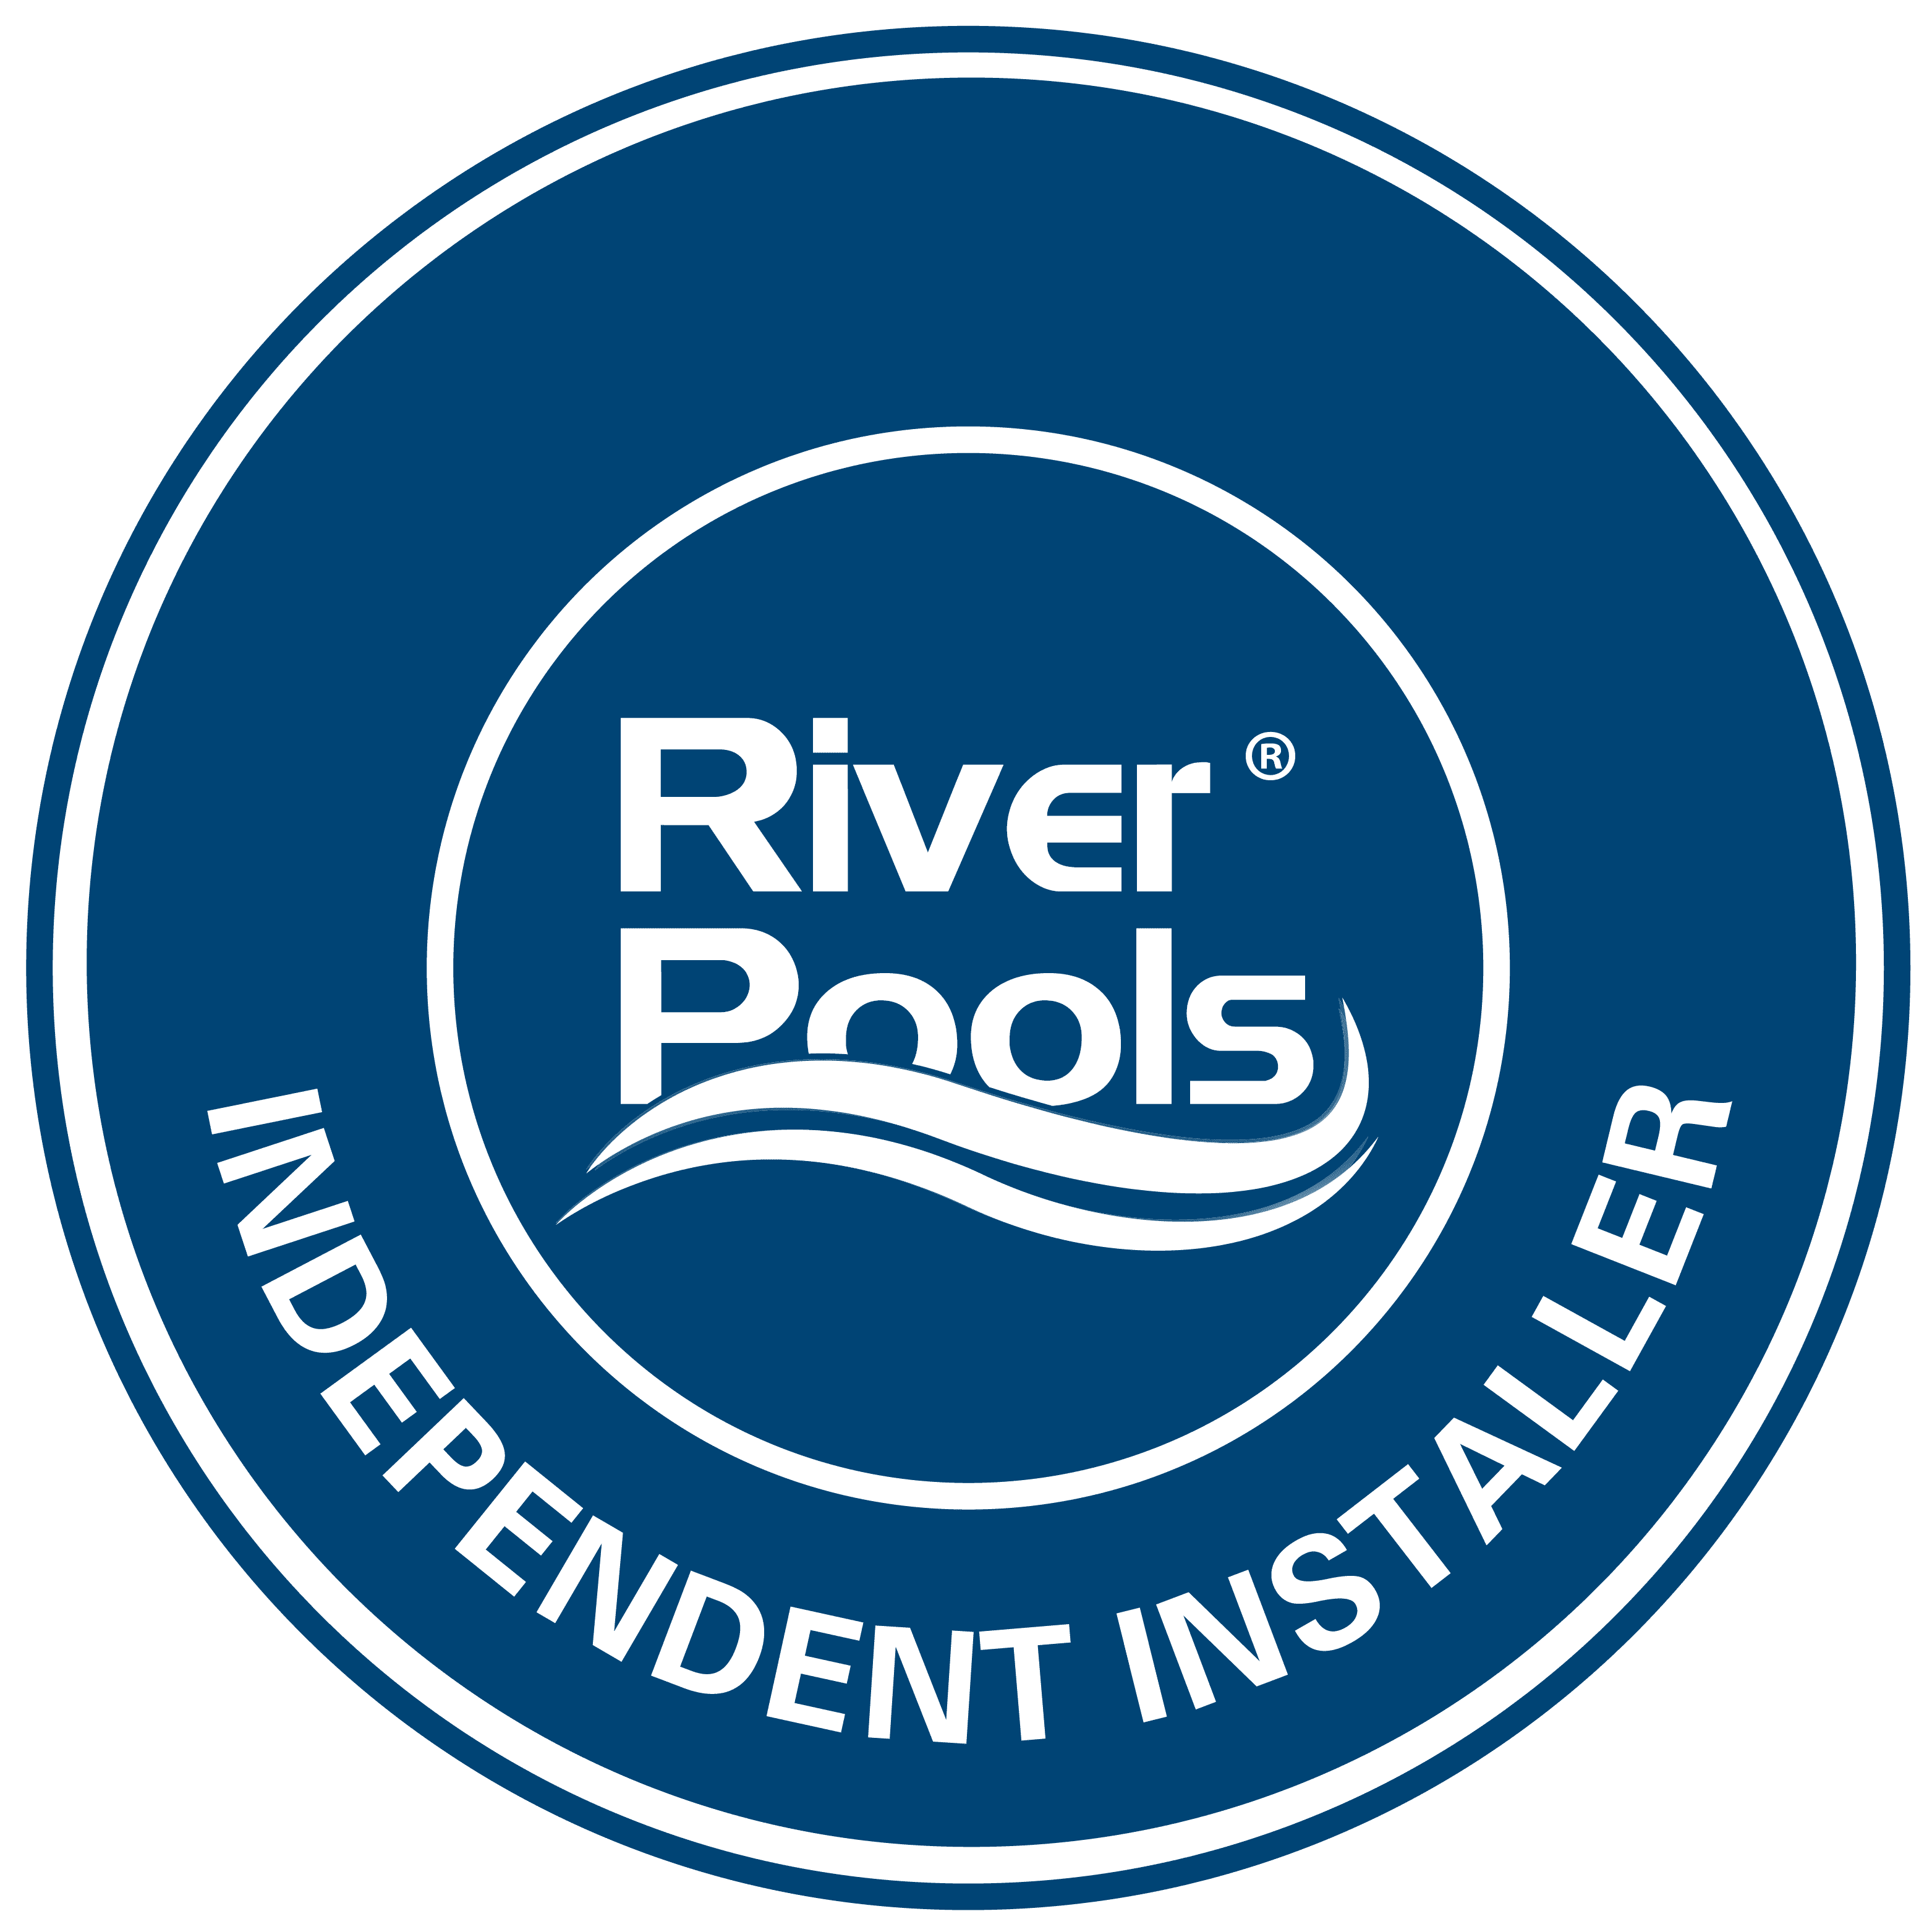 river pools independent installer badge